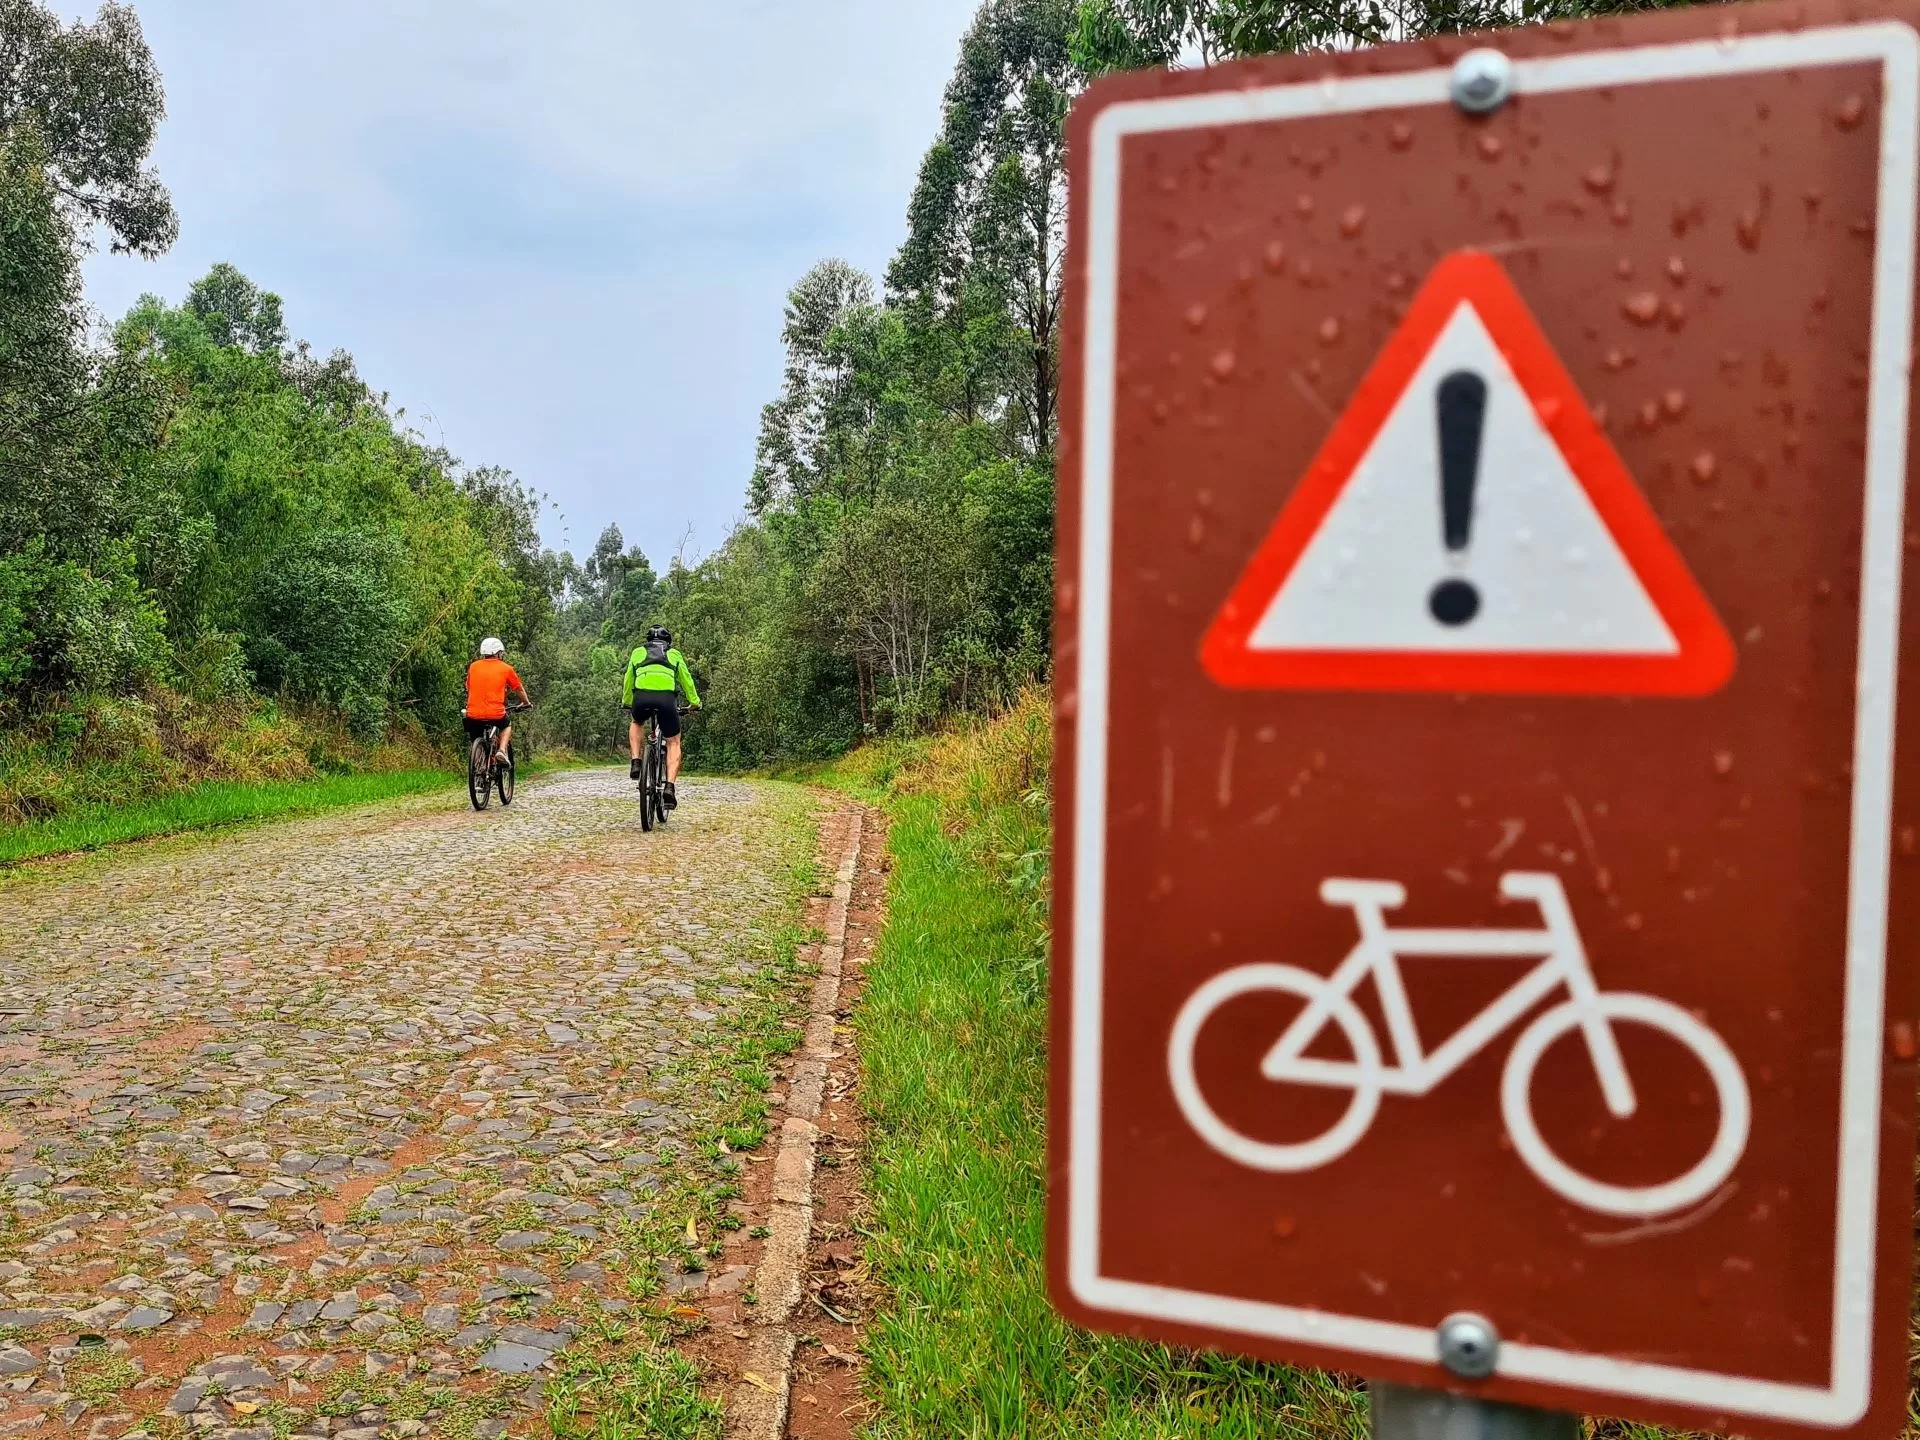 Rota de cicloturismo autoguiada e sinalizada no Paraná, outro belo exemplo de como criar rotas e circuitos de cicloturismo.